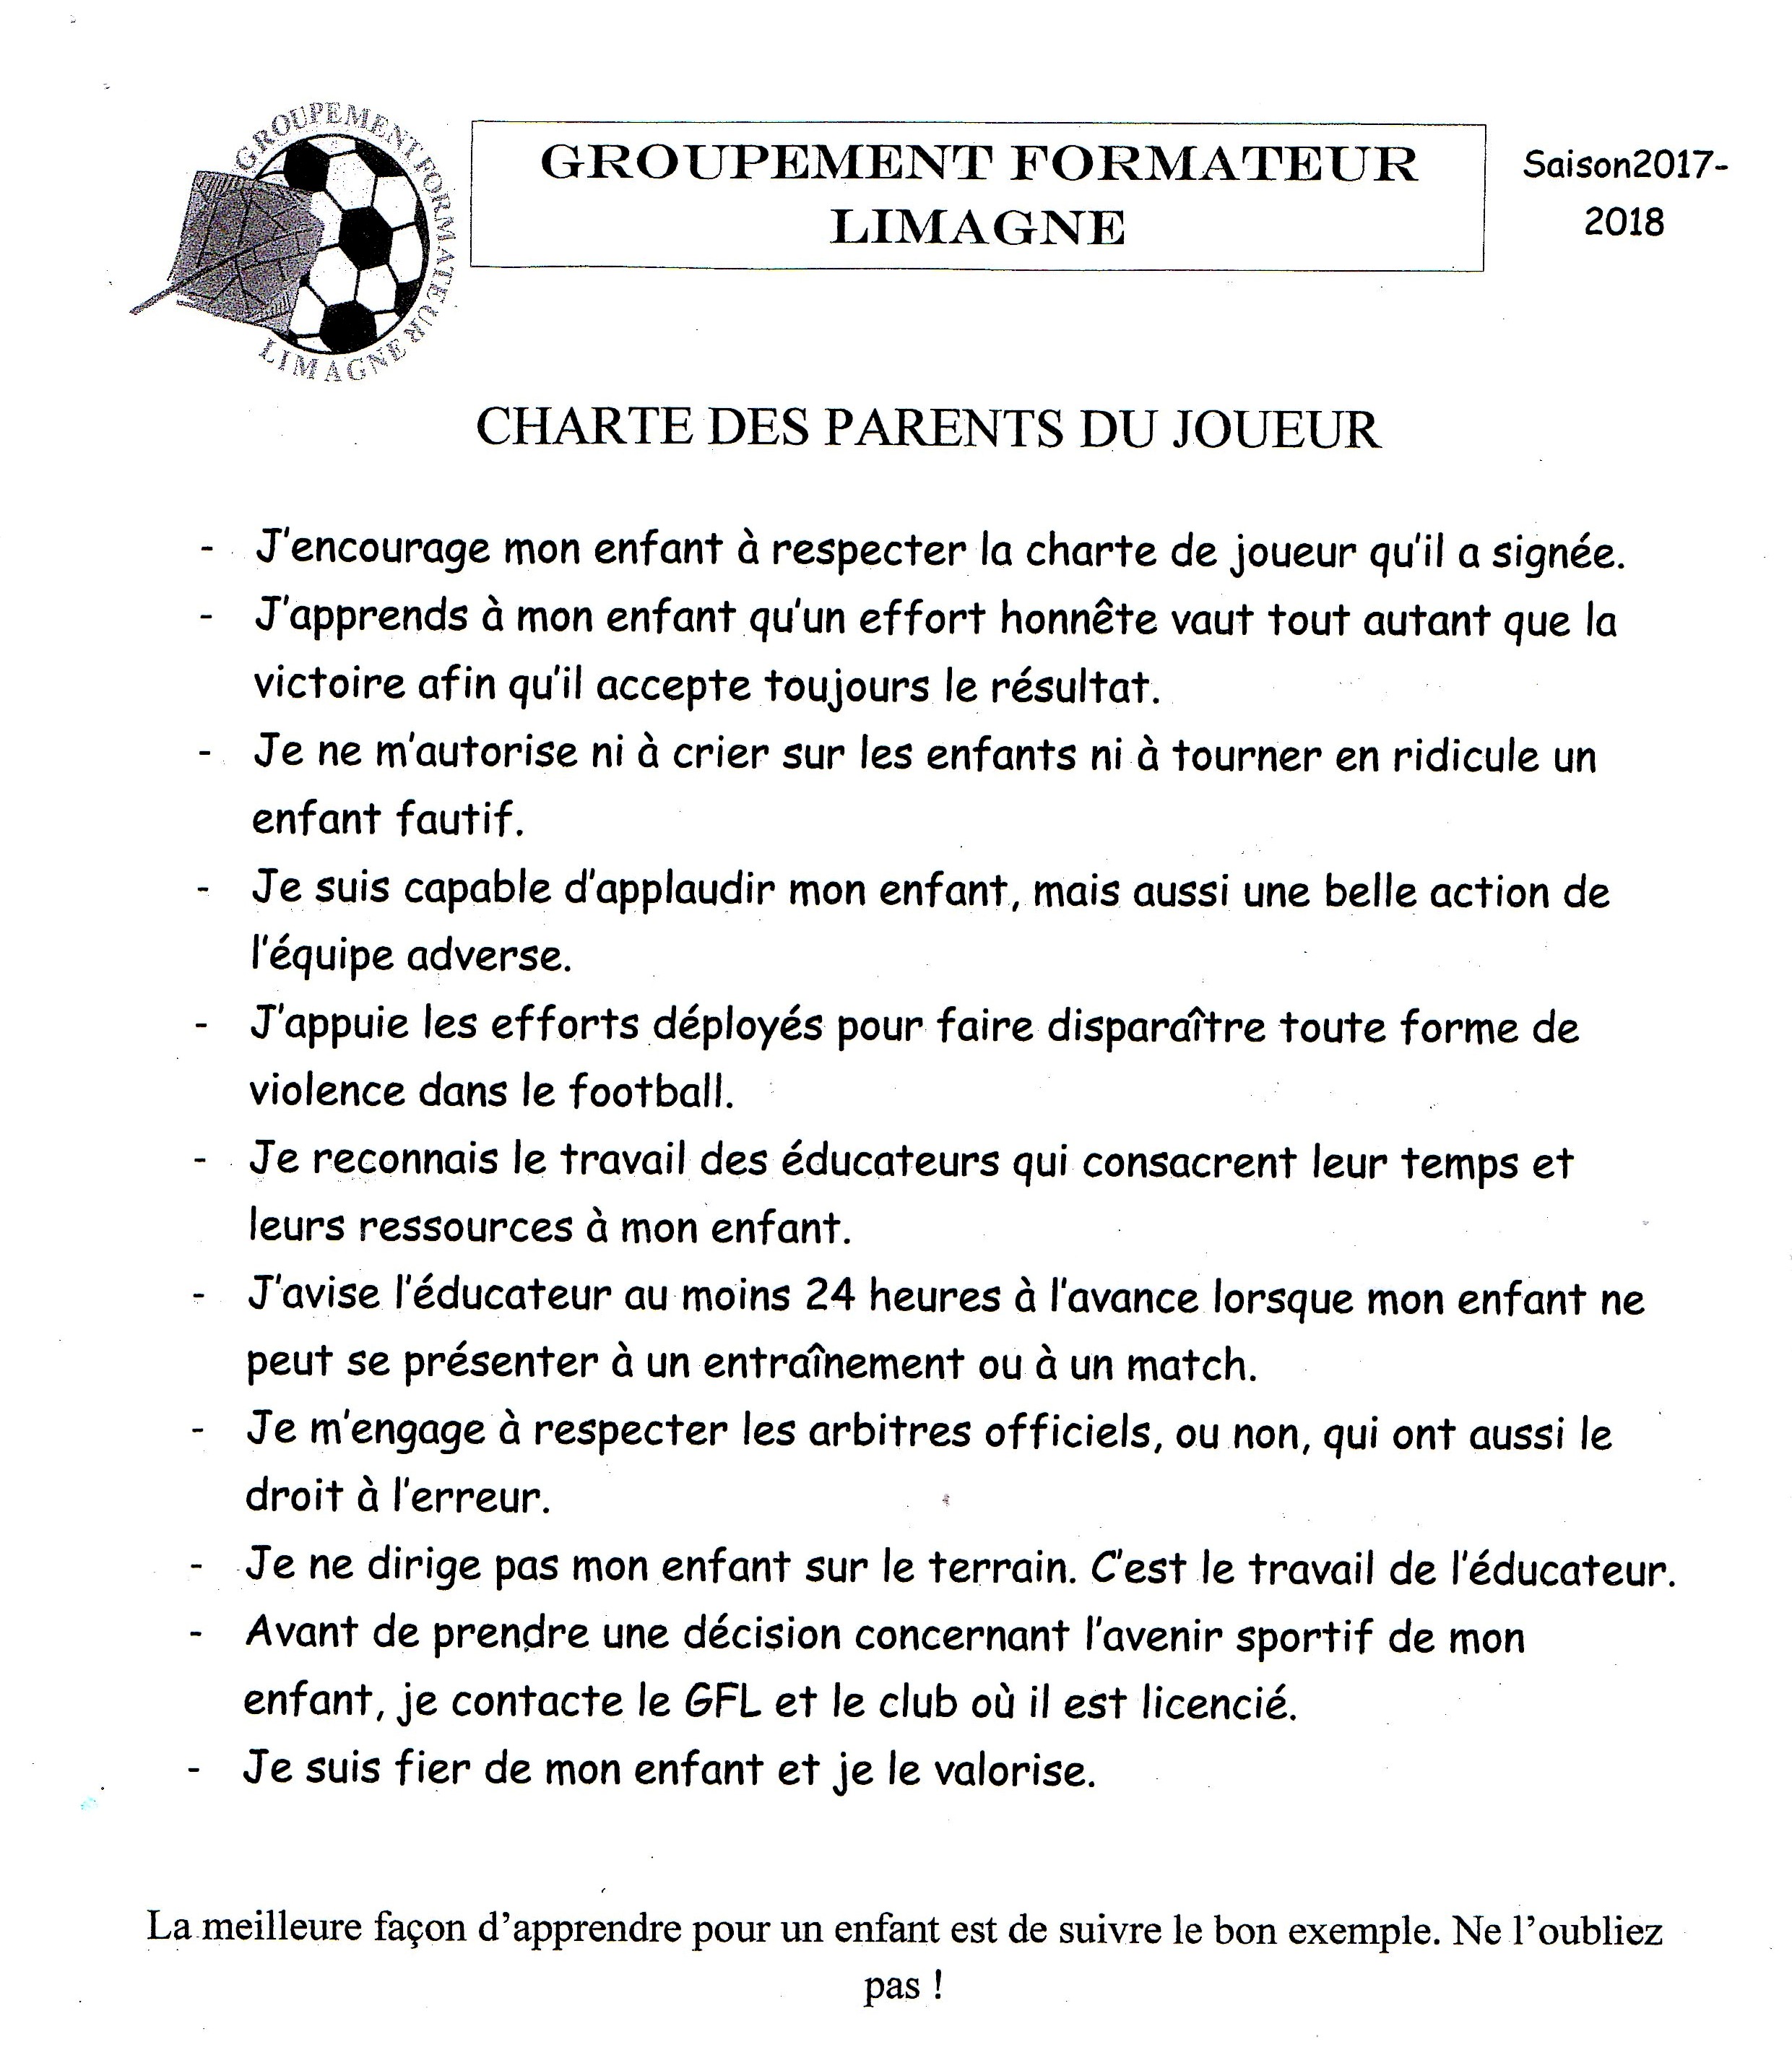 Charte des parents du joueur 2017-2018.jpg